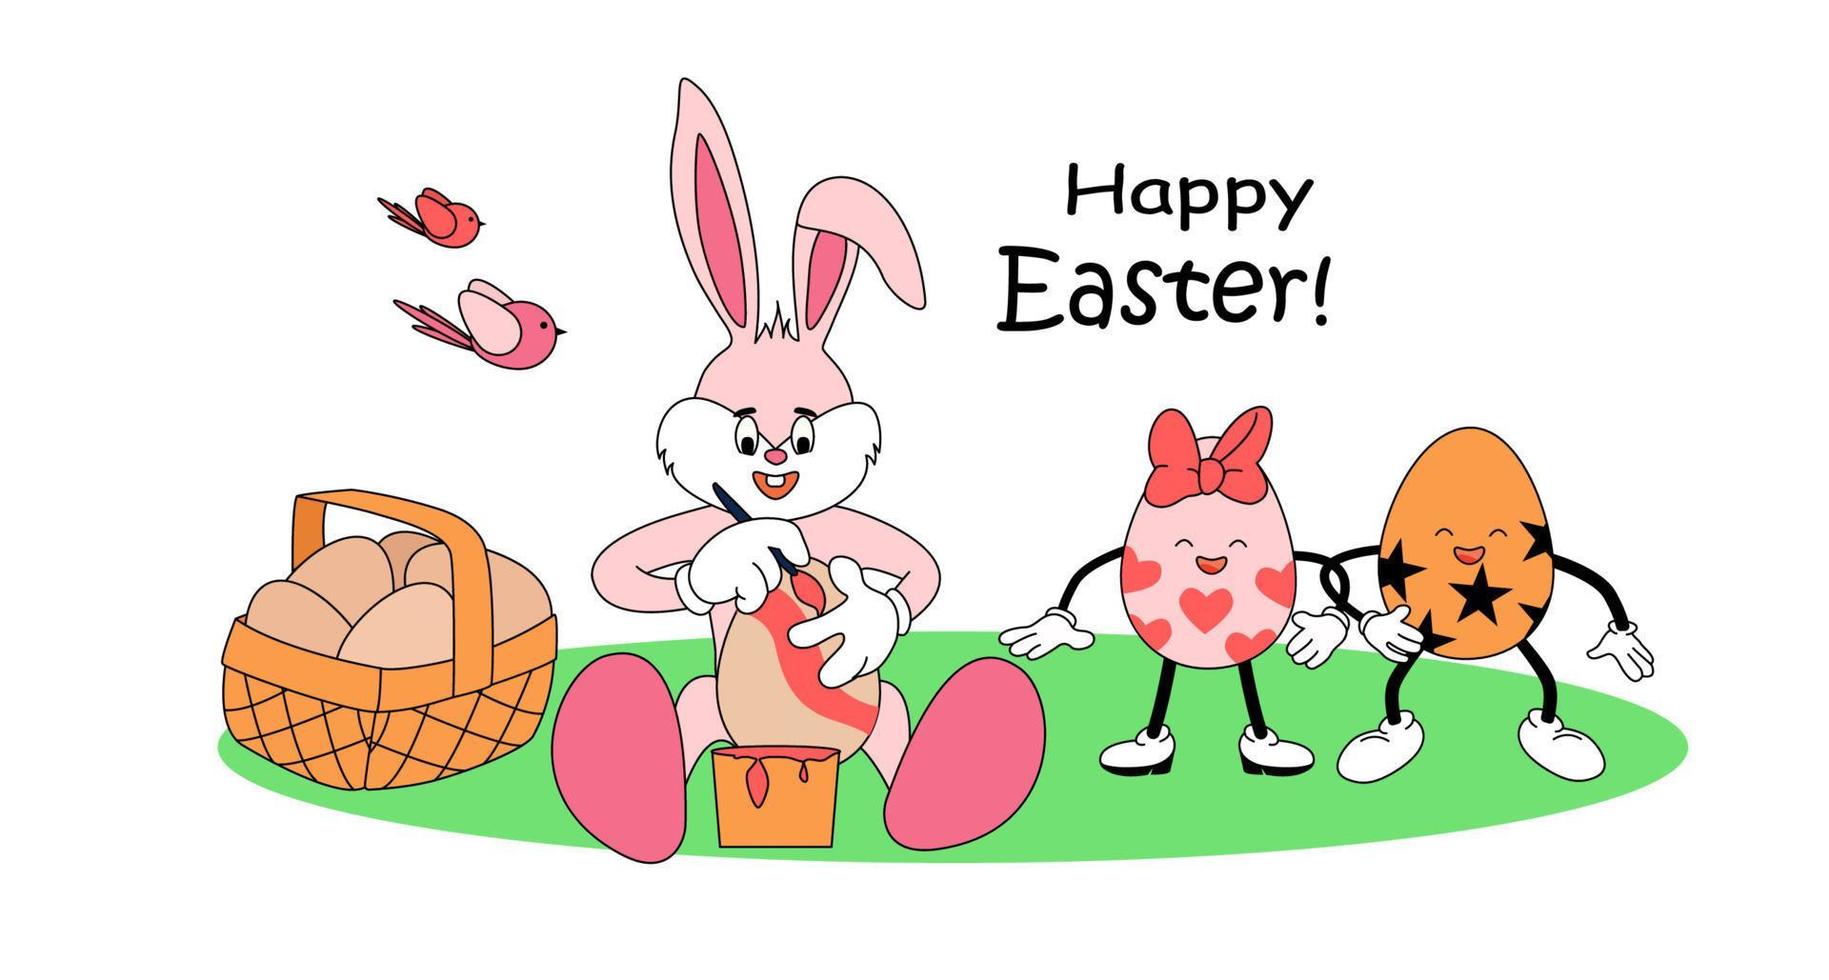 Hase Färbung ein Ostern Ei. gemalt Ostern Eier sind komisch Figuren, retro Atmosphäre. glücklich Ostern Beschriftung. hell Vektor Illustration